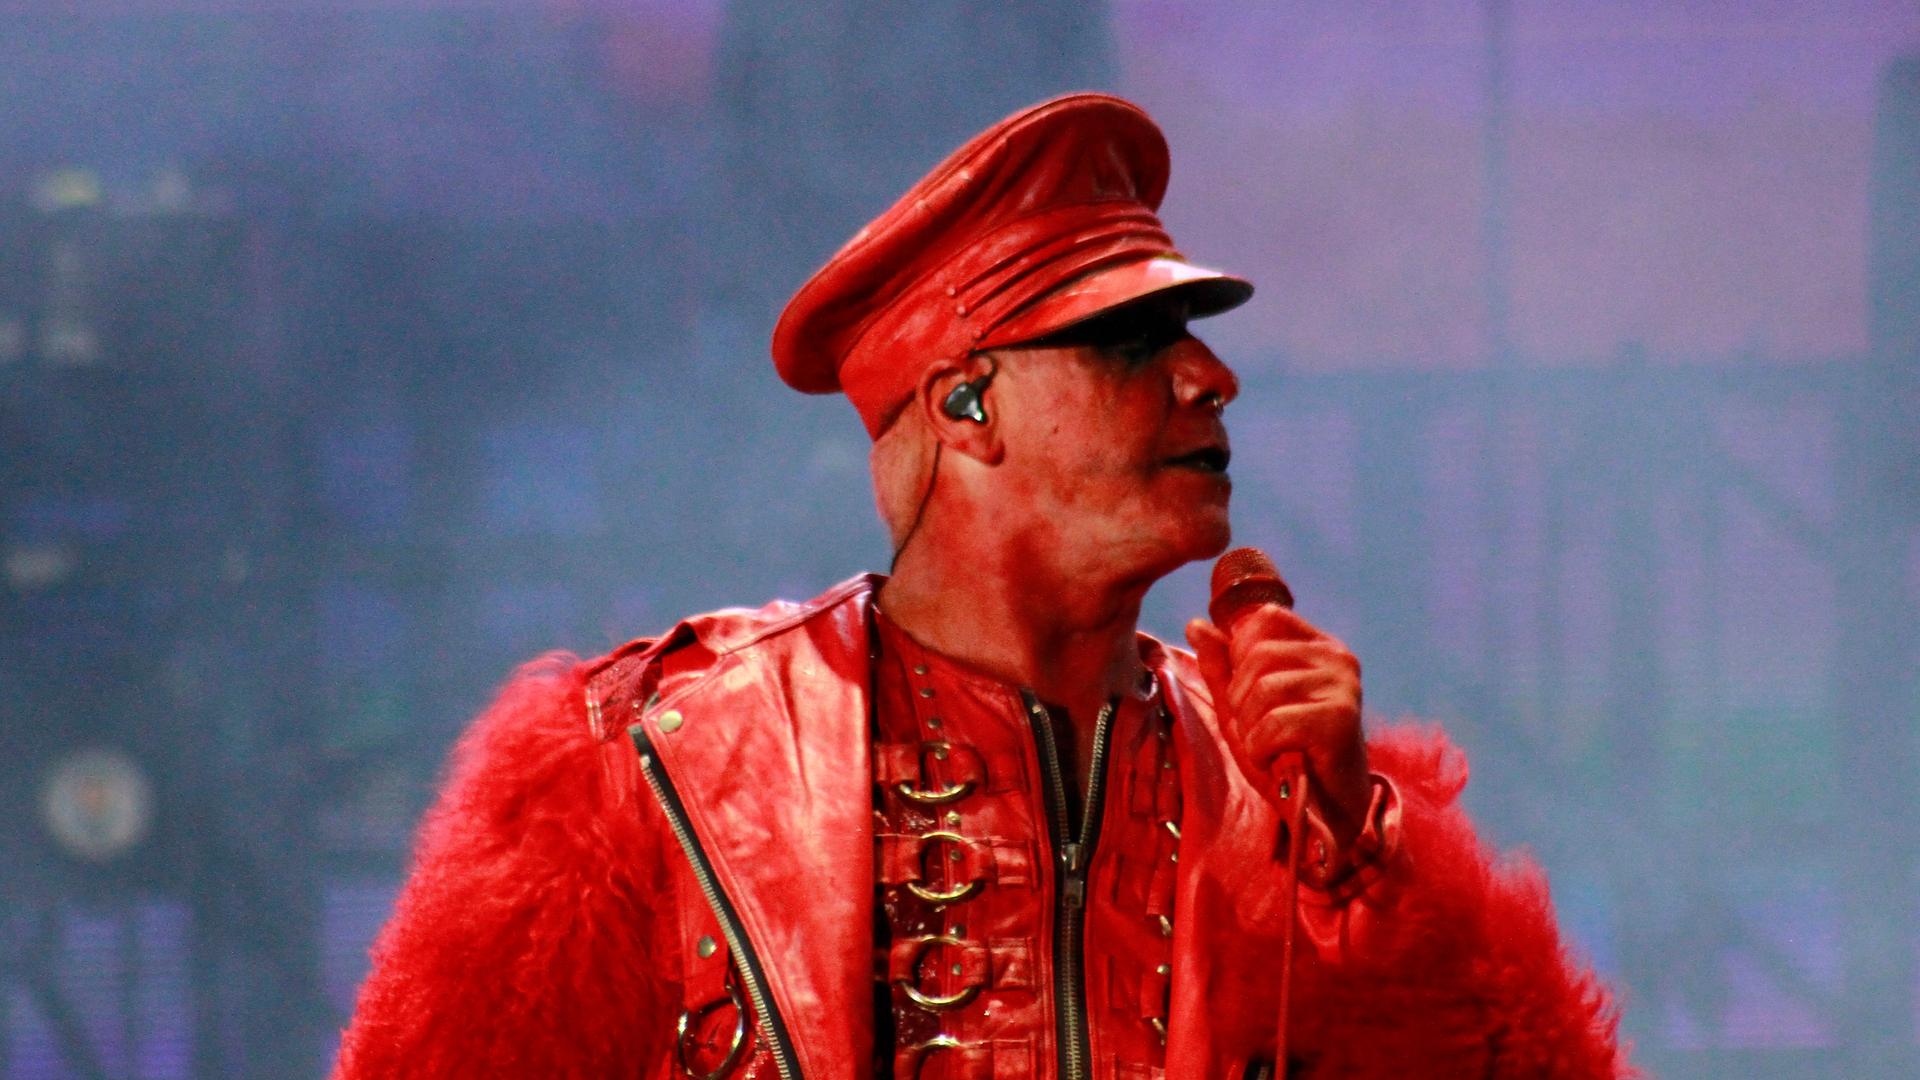 Till Lindemann ist komplett in rot gekleidet, auch sein Gesicht ist rot geschminkt. Er hält ein Mikrofon in der Hand und steht dabei auf einer Bühne.